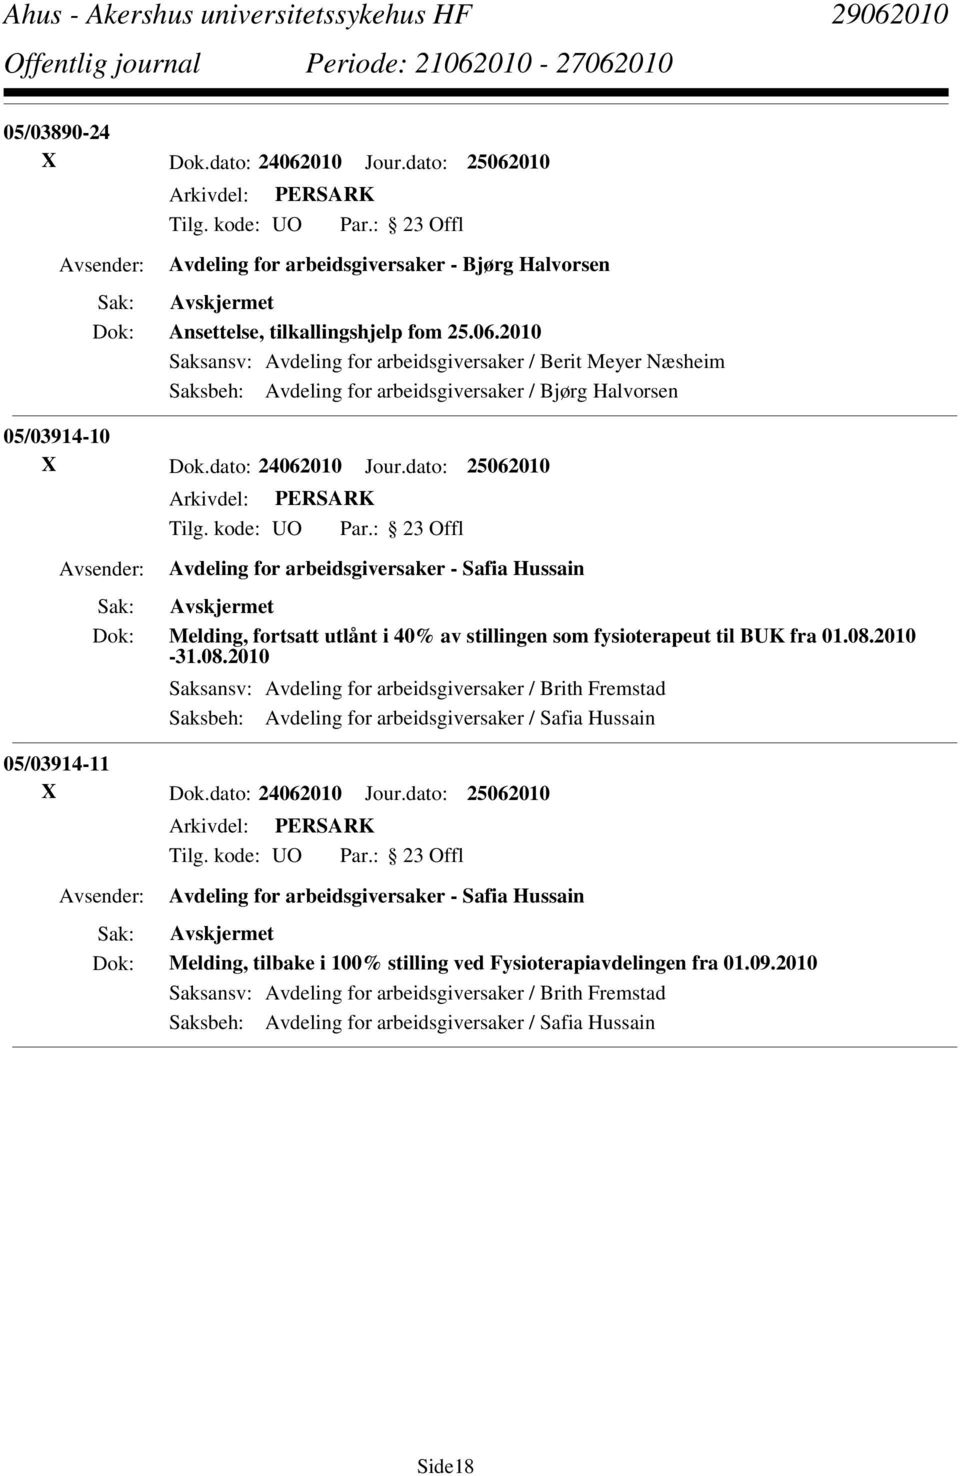 2010-31.08.2010 Saksansv: Avdeling for arbeidsgiversaker / Brith Fremstad Saksbeh: Avdeling for arbeidsgiversaker / Safia Hussain 05/03914-11 X Dok.dato: 24062010 Jour.